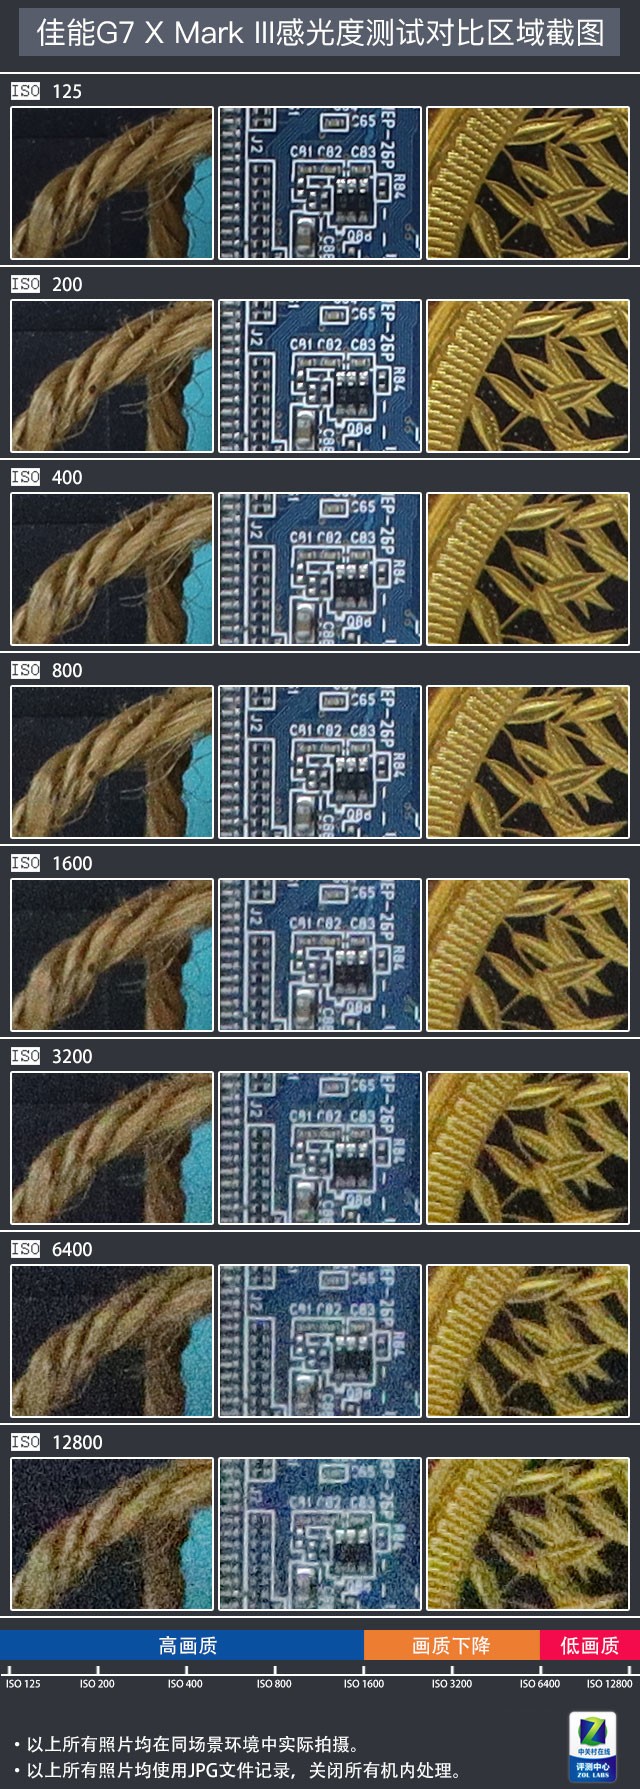 新一代网红神器 佳能G7X3卡片机评测 